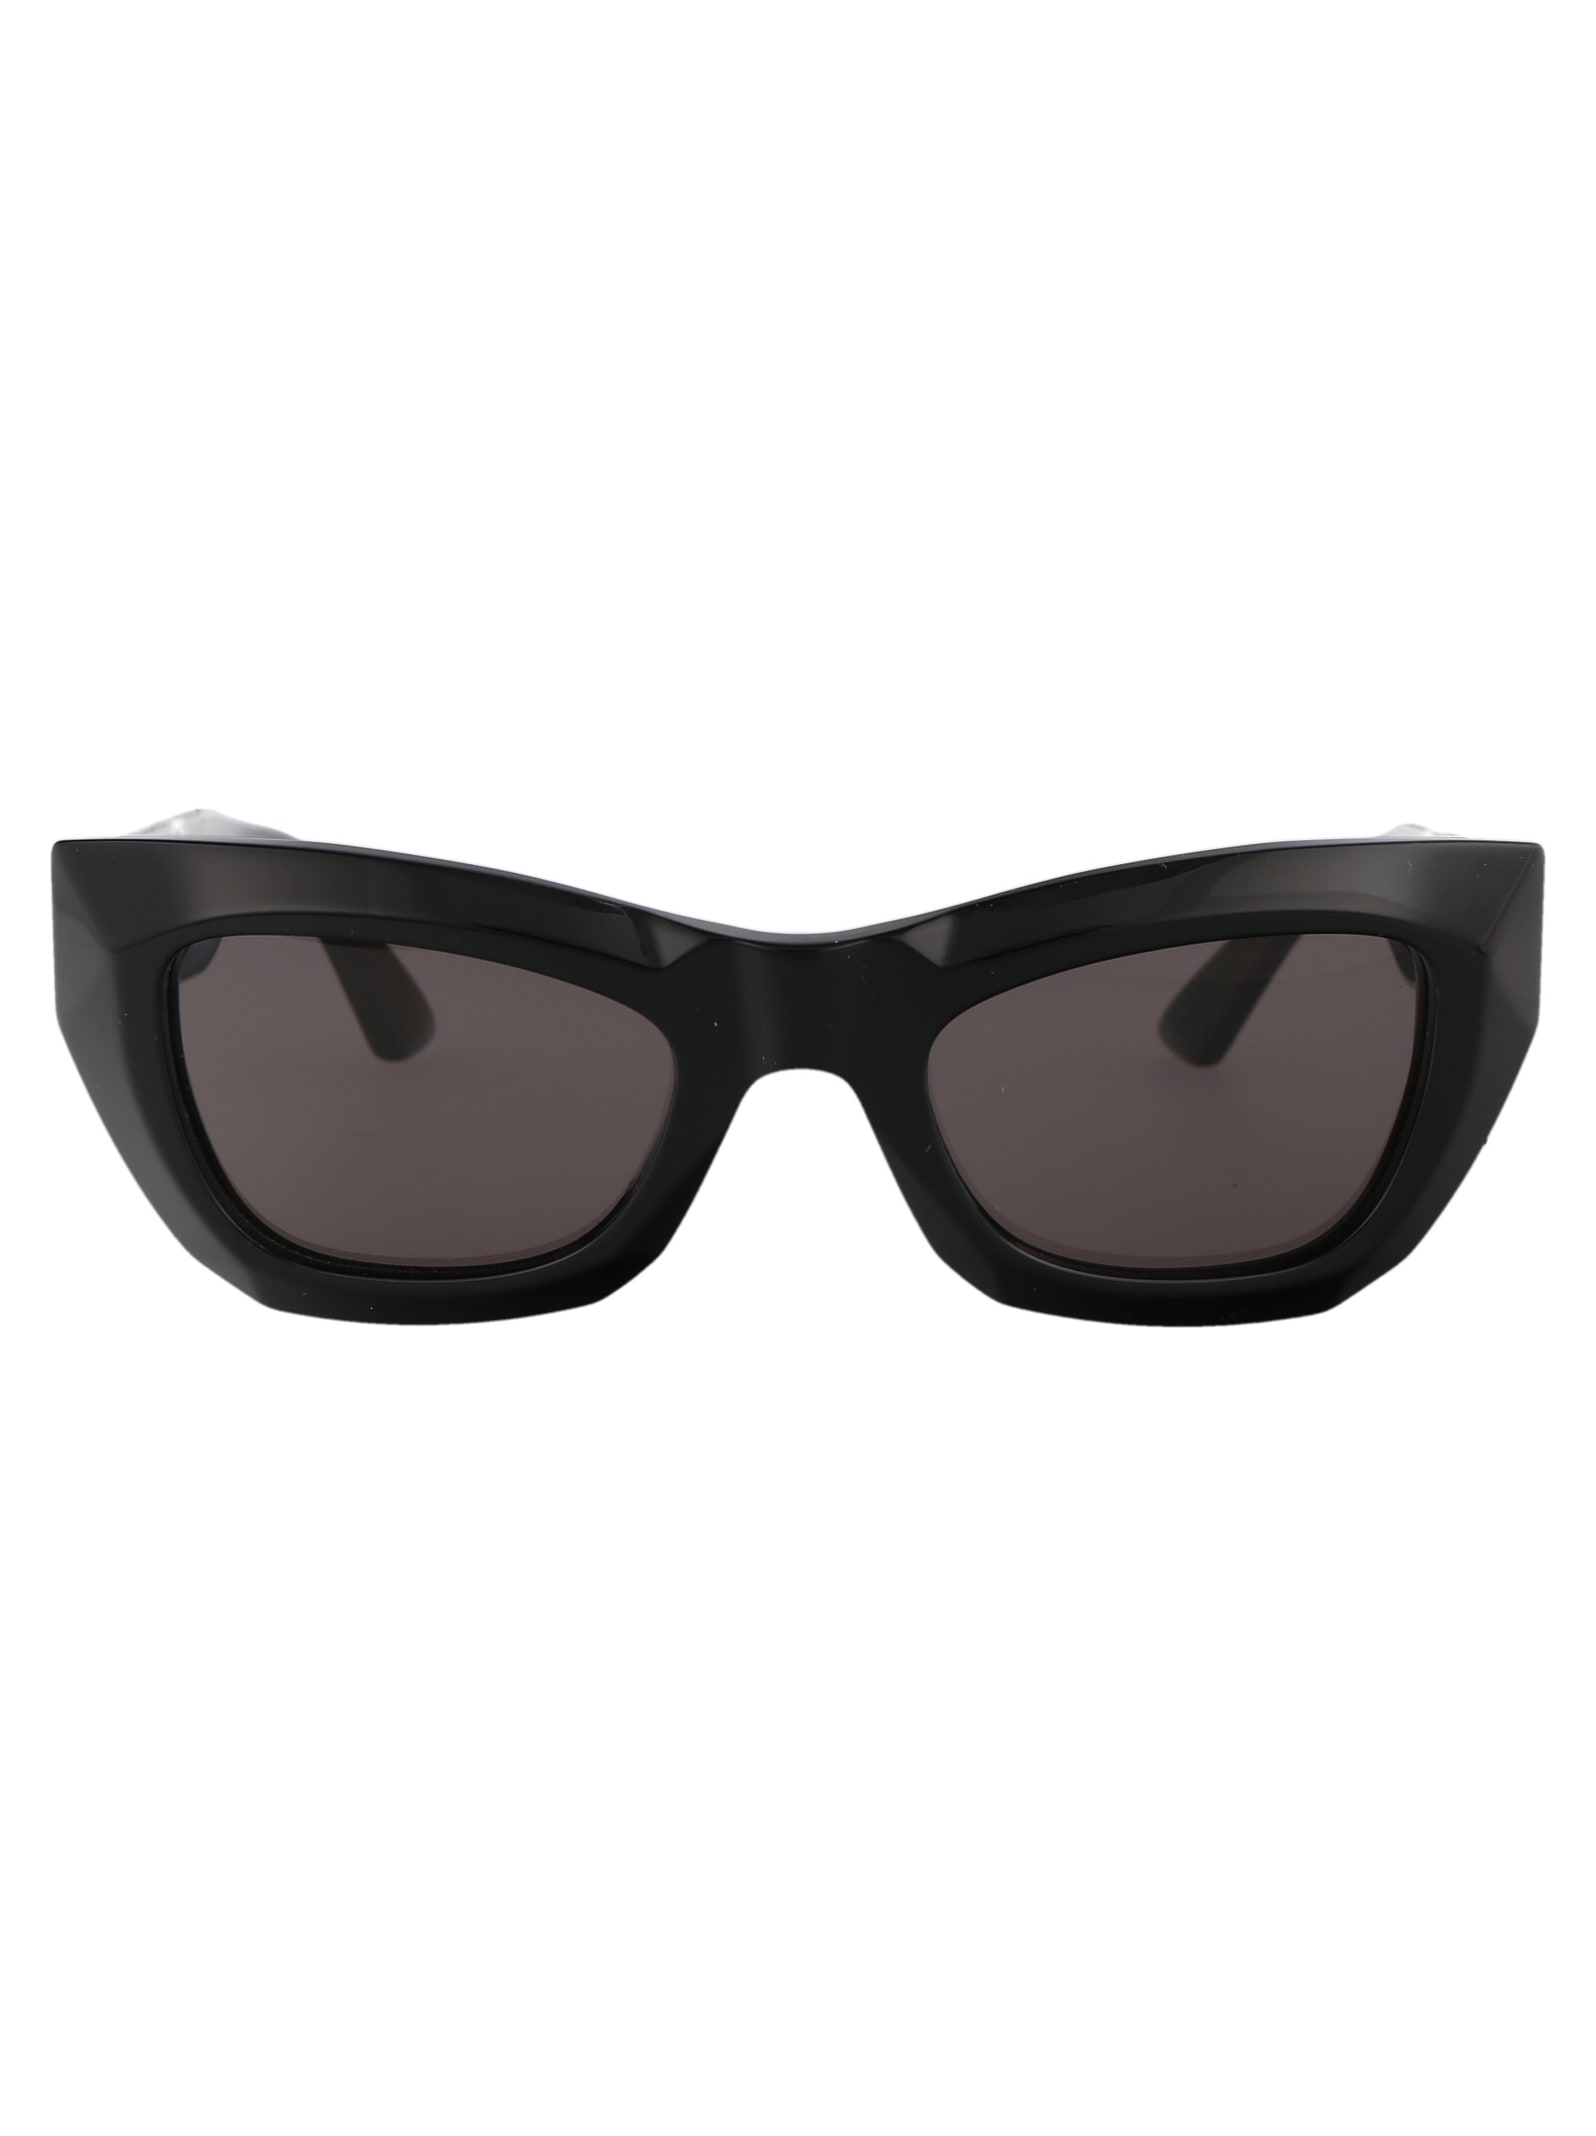 Bv1251s Sunglasses